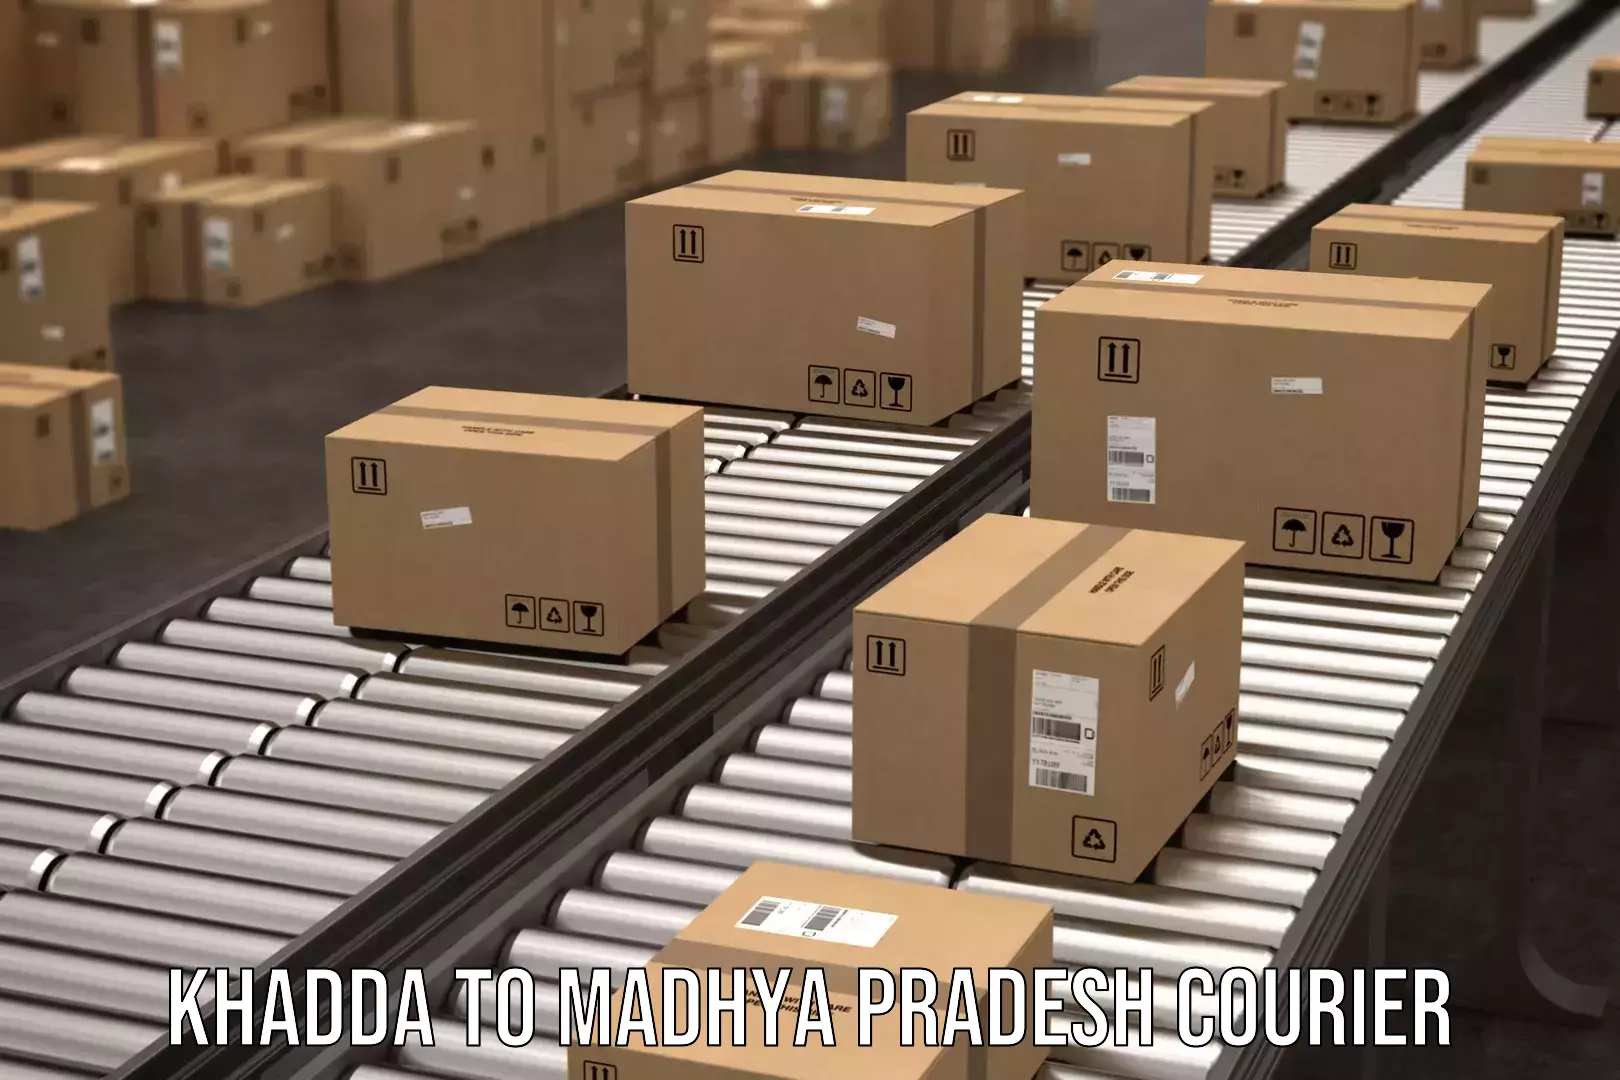 Global shipping solutions in Khadda to Satna